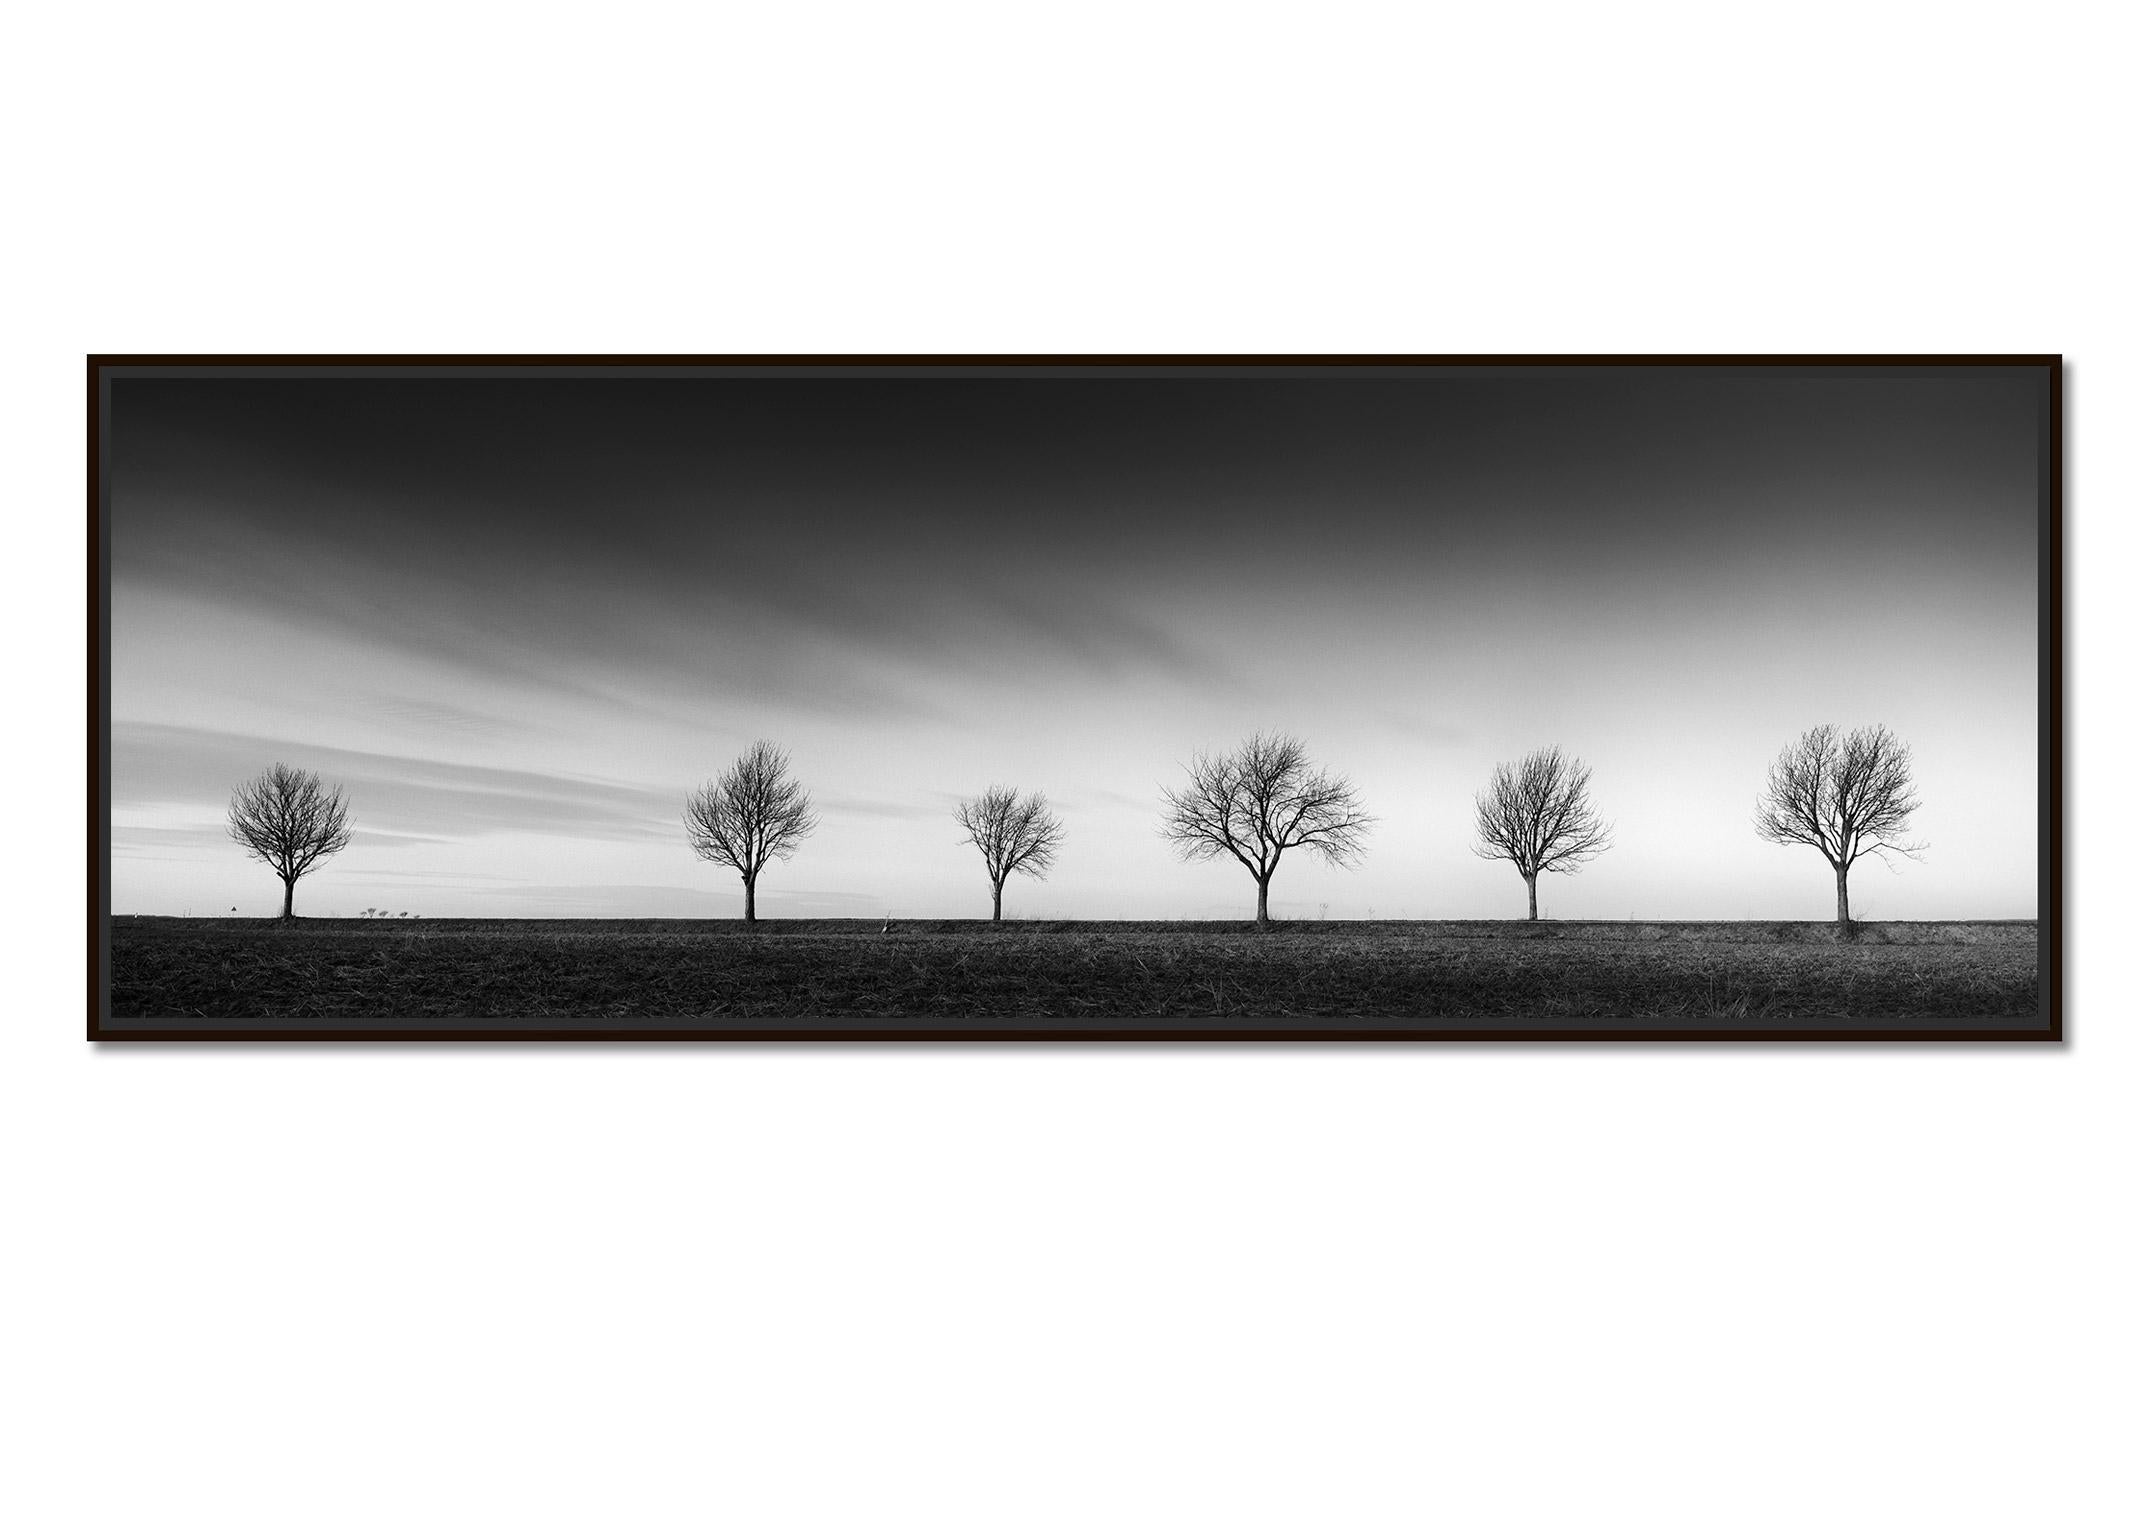 Row of Six Cherry Trees, Sonnenuntergang, Schwarz-Weiß- Panoramenfotografie, Landschaft – Photograph von Gerald Berghammer